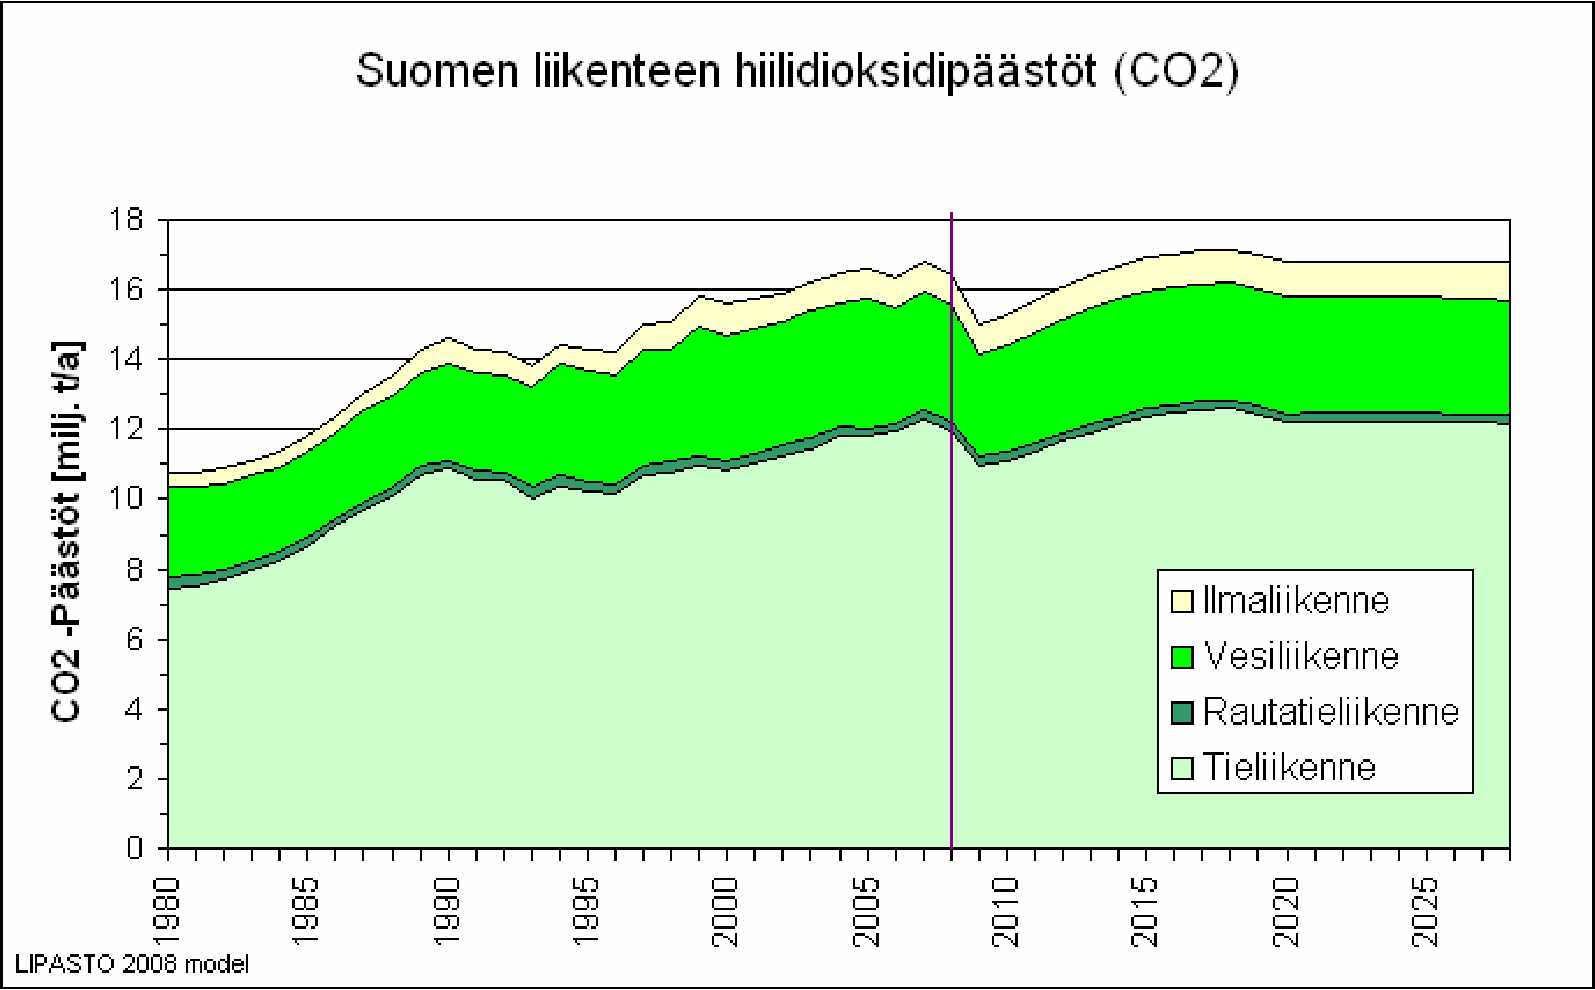 14 2 Nykytilanne ja trendit 2.1 Suomen liikenne Suomessa liikenteen CO2 -päästöt ovat 1990-luvun alkupuolen laman jälkeen kasvaneet noin kahdella miljoonalla tonnilla.